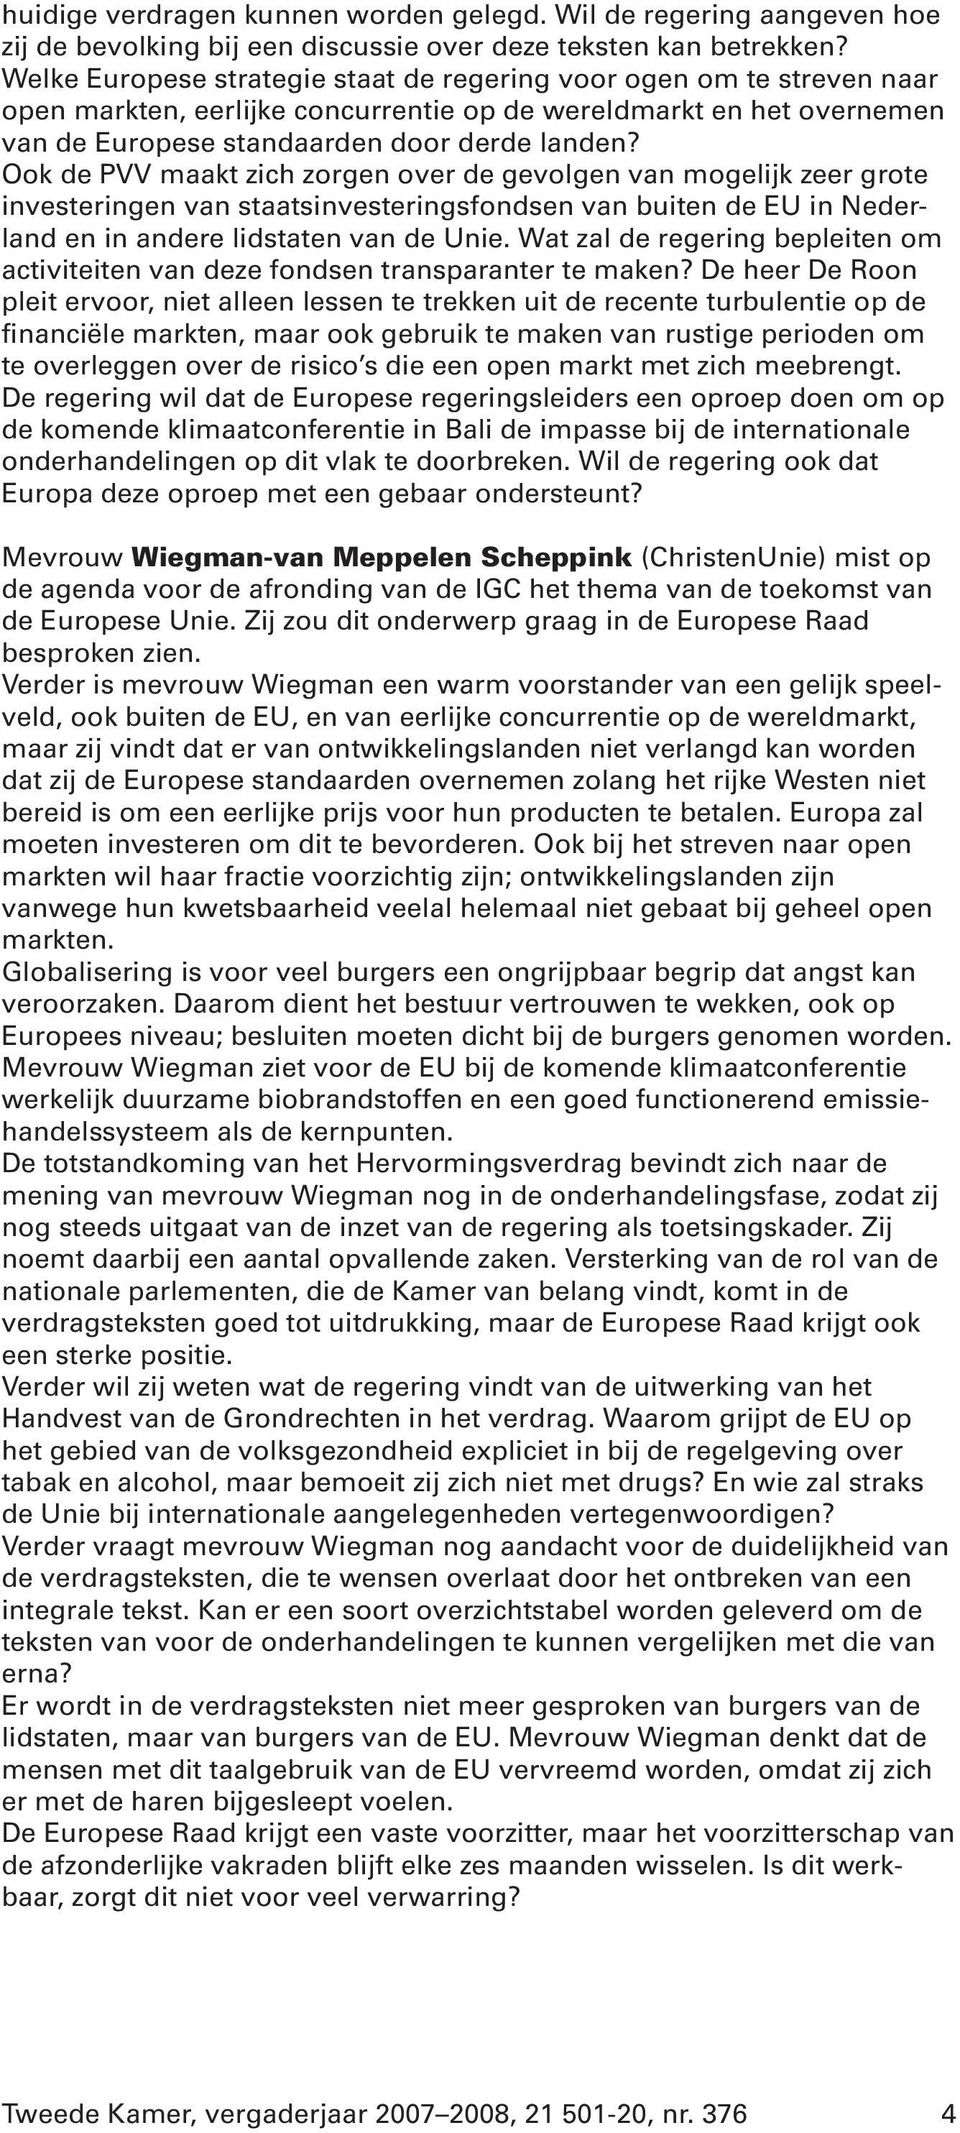 Ook de PVV maakt zich zorgen over de gevolgen van mogelijk zeer grote investeringen van staatsinvesteringsfondsen van buiten de EU in Nederland en in andere lidstaten van de Unie.